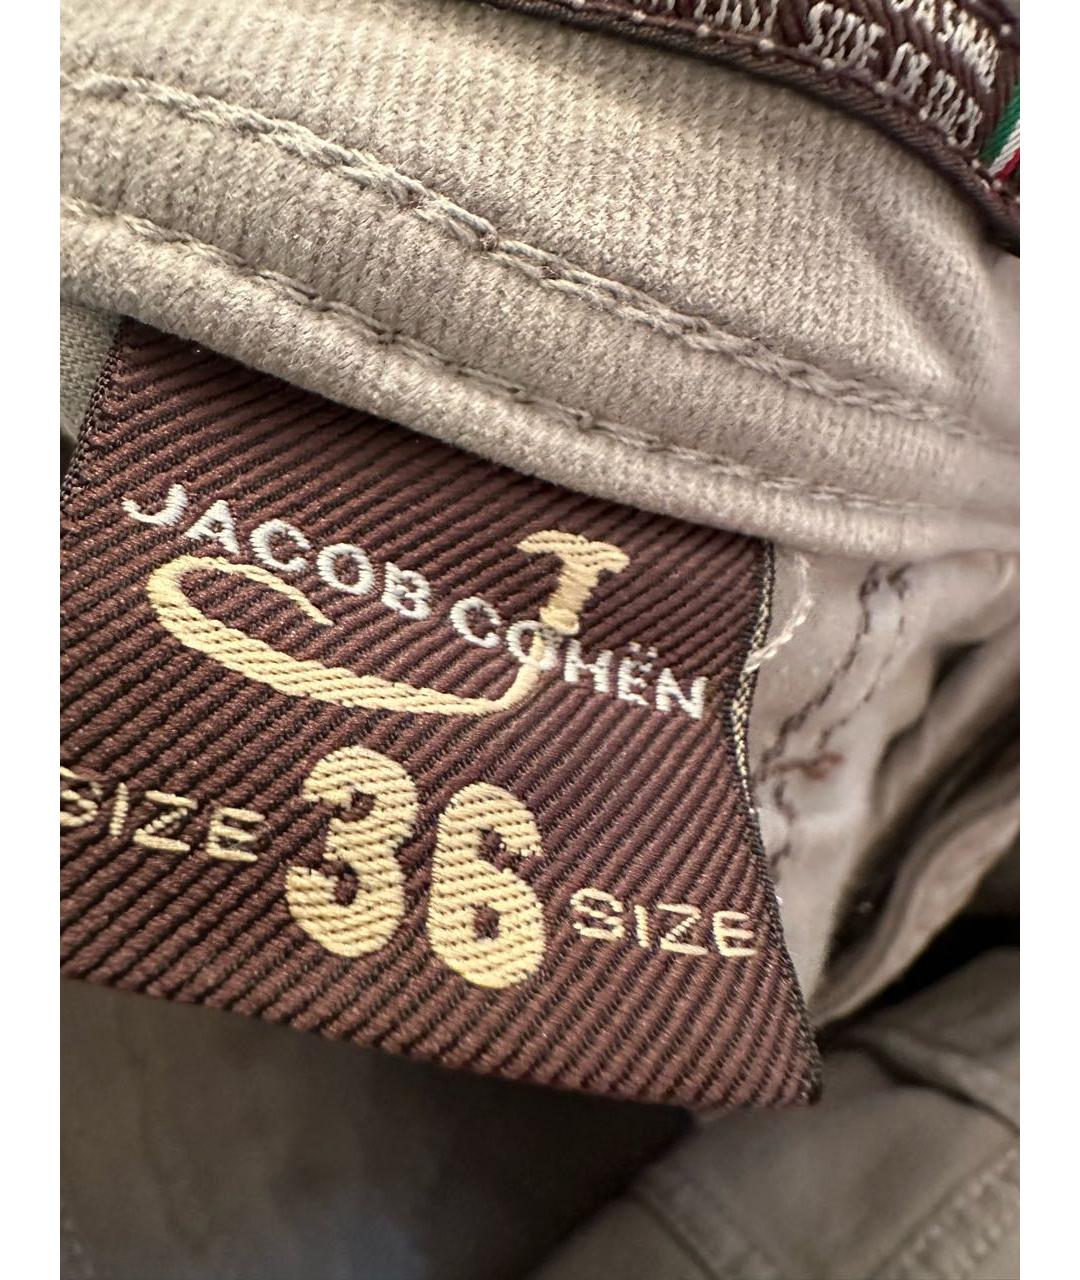 JACOB COHEN Серые хлопковые прямые джинсы, фото 3